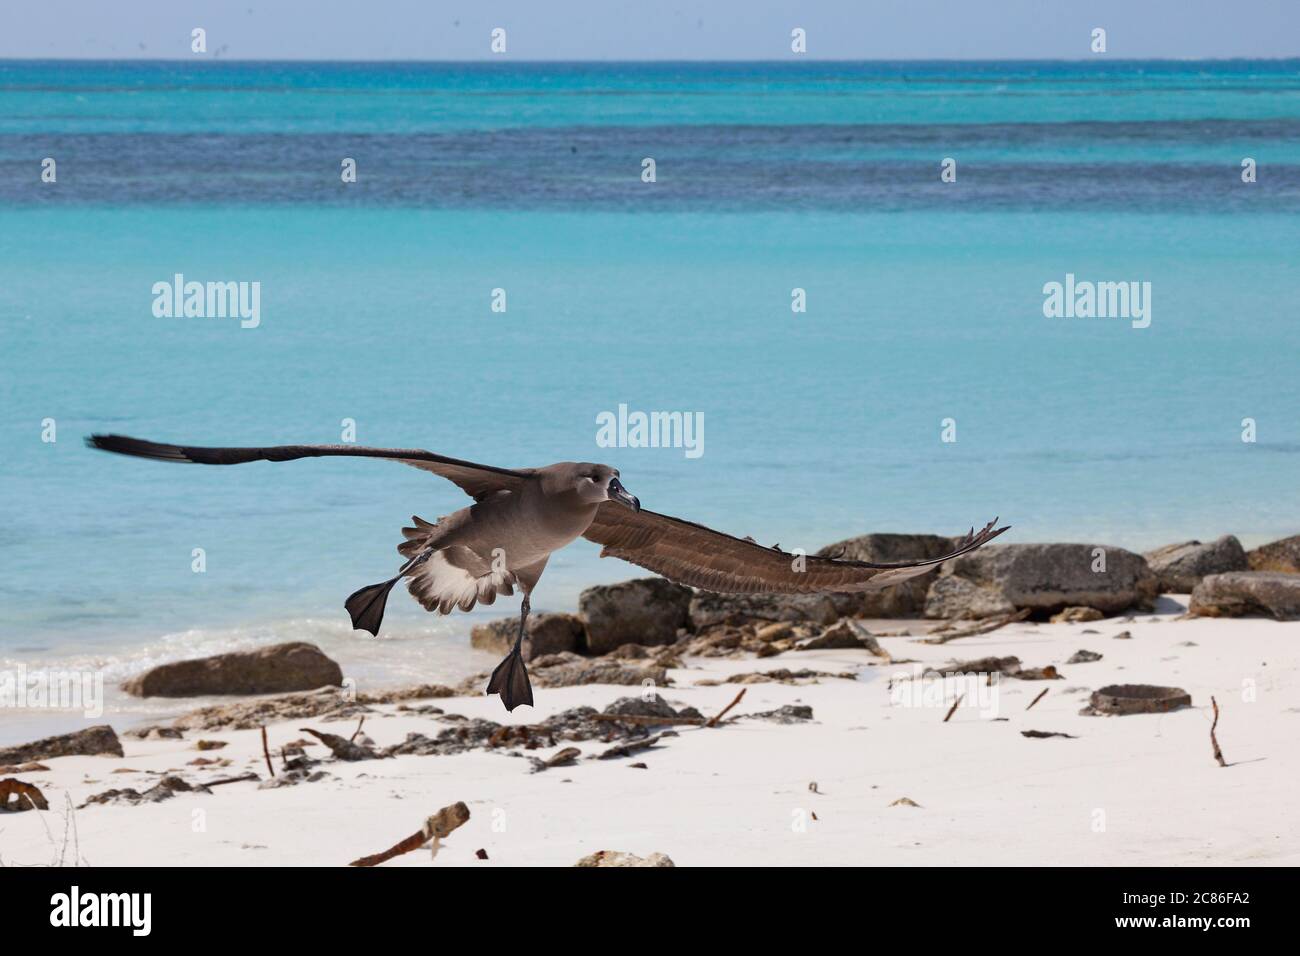 Albatross dai piedi neri, nigripi di Phoebastria, atterraggio sulla spiaggia, isola di sabbia, rifugio naturale nazionale dell'Atollo di Midway, Papahanaumokuakea MNM, Hawaii USA Foto Stock